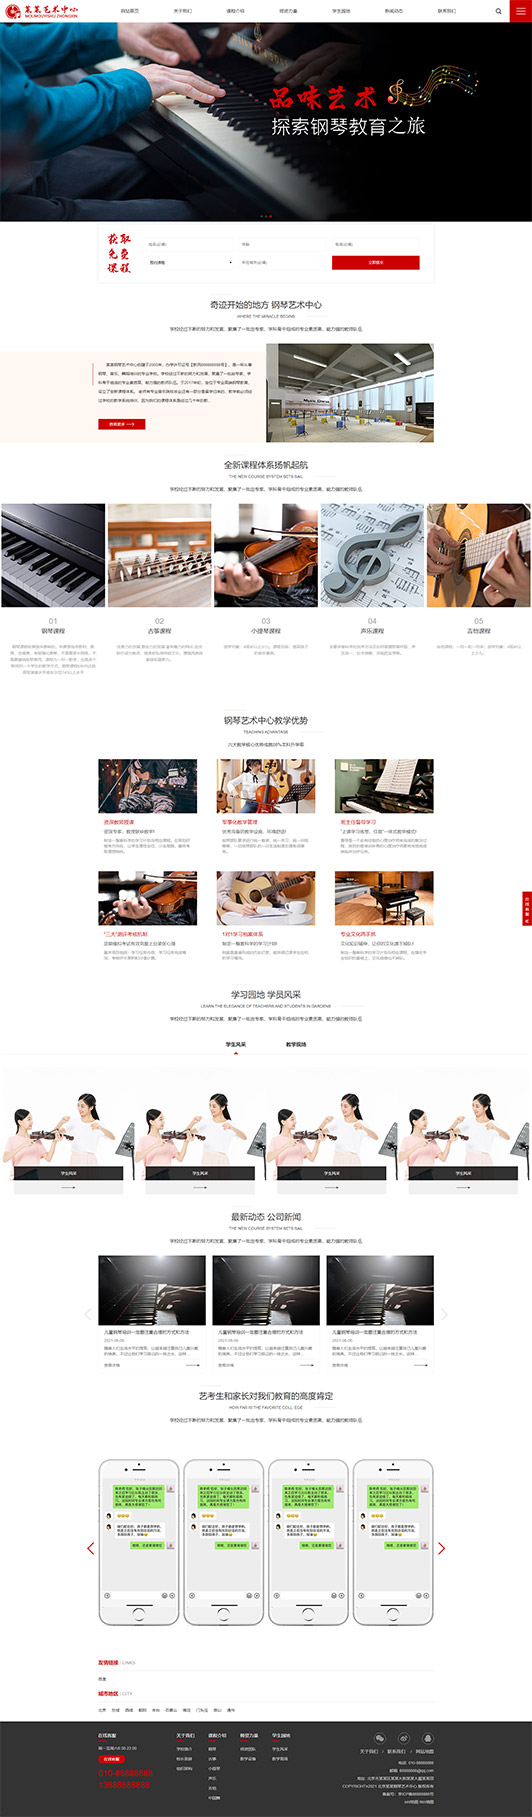 云南钢琴艺术培训公司响应式企业网站